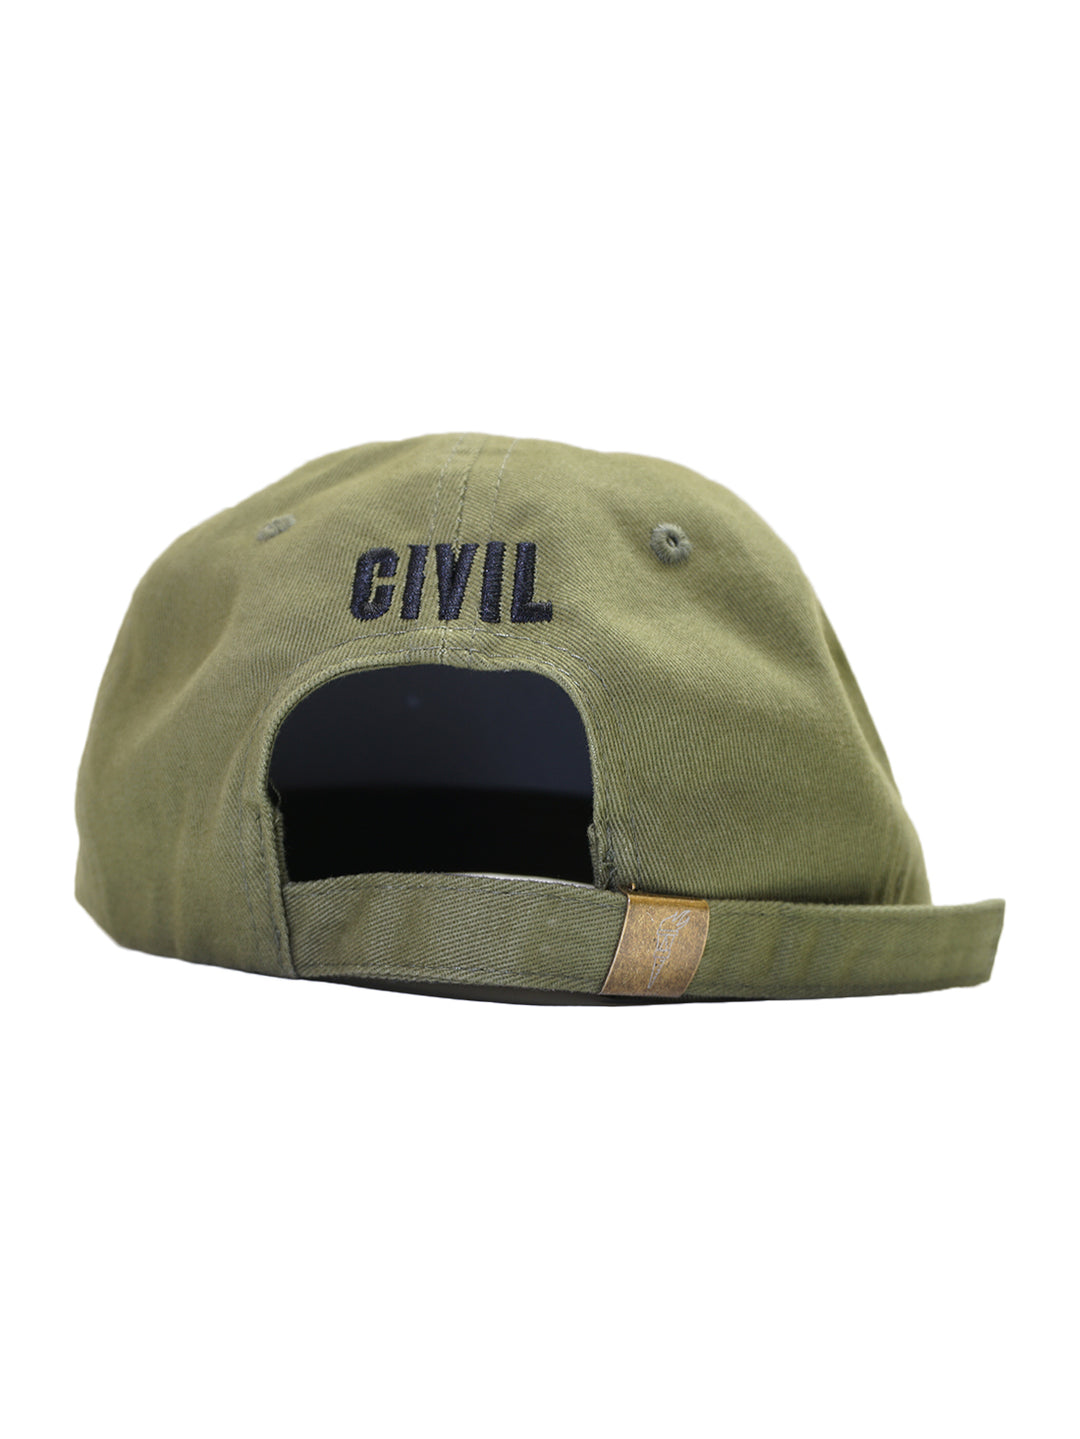 Civil Lion Hat